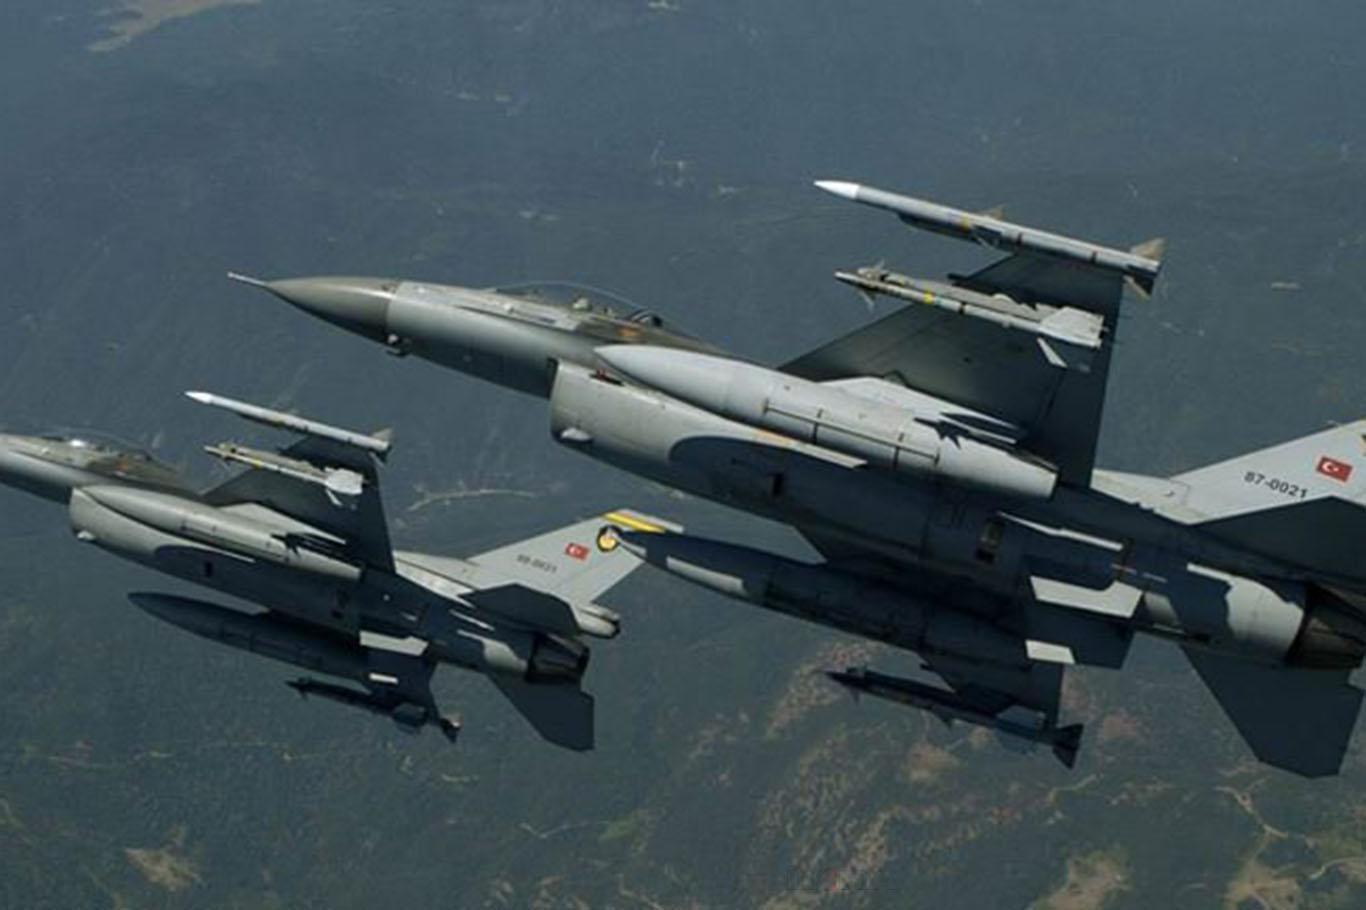 MSB: Kuzey Irak'ta tespit edilen PKK hedefleri imha edildi